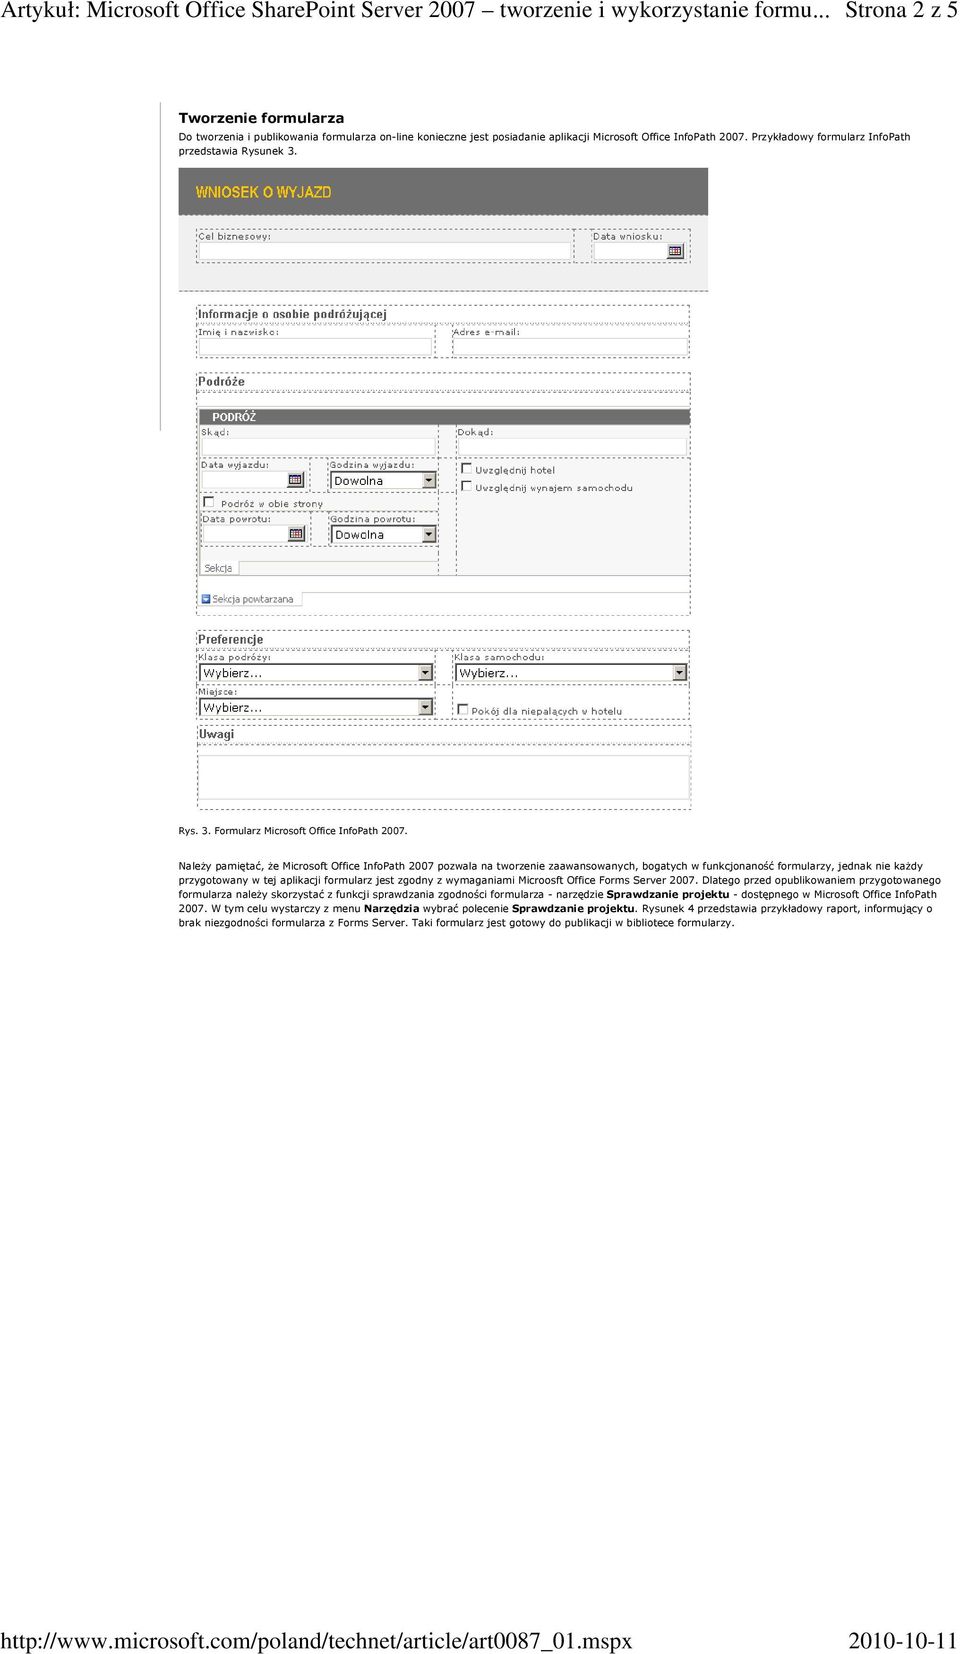 Należy pamiętać, że Microsoft Office InfoPath 2007 pozwala na tworzenie zaawansowanych, bogatych w funkcjonaność formularzy, jednak nie każdy przygotowany w tej aplikacji formularz jest zgodny z